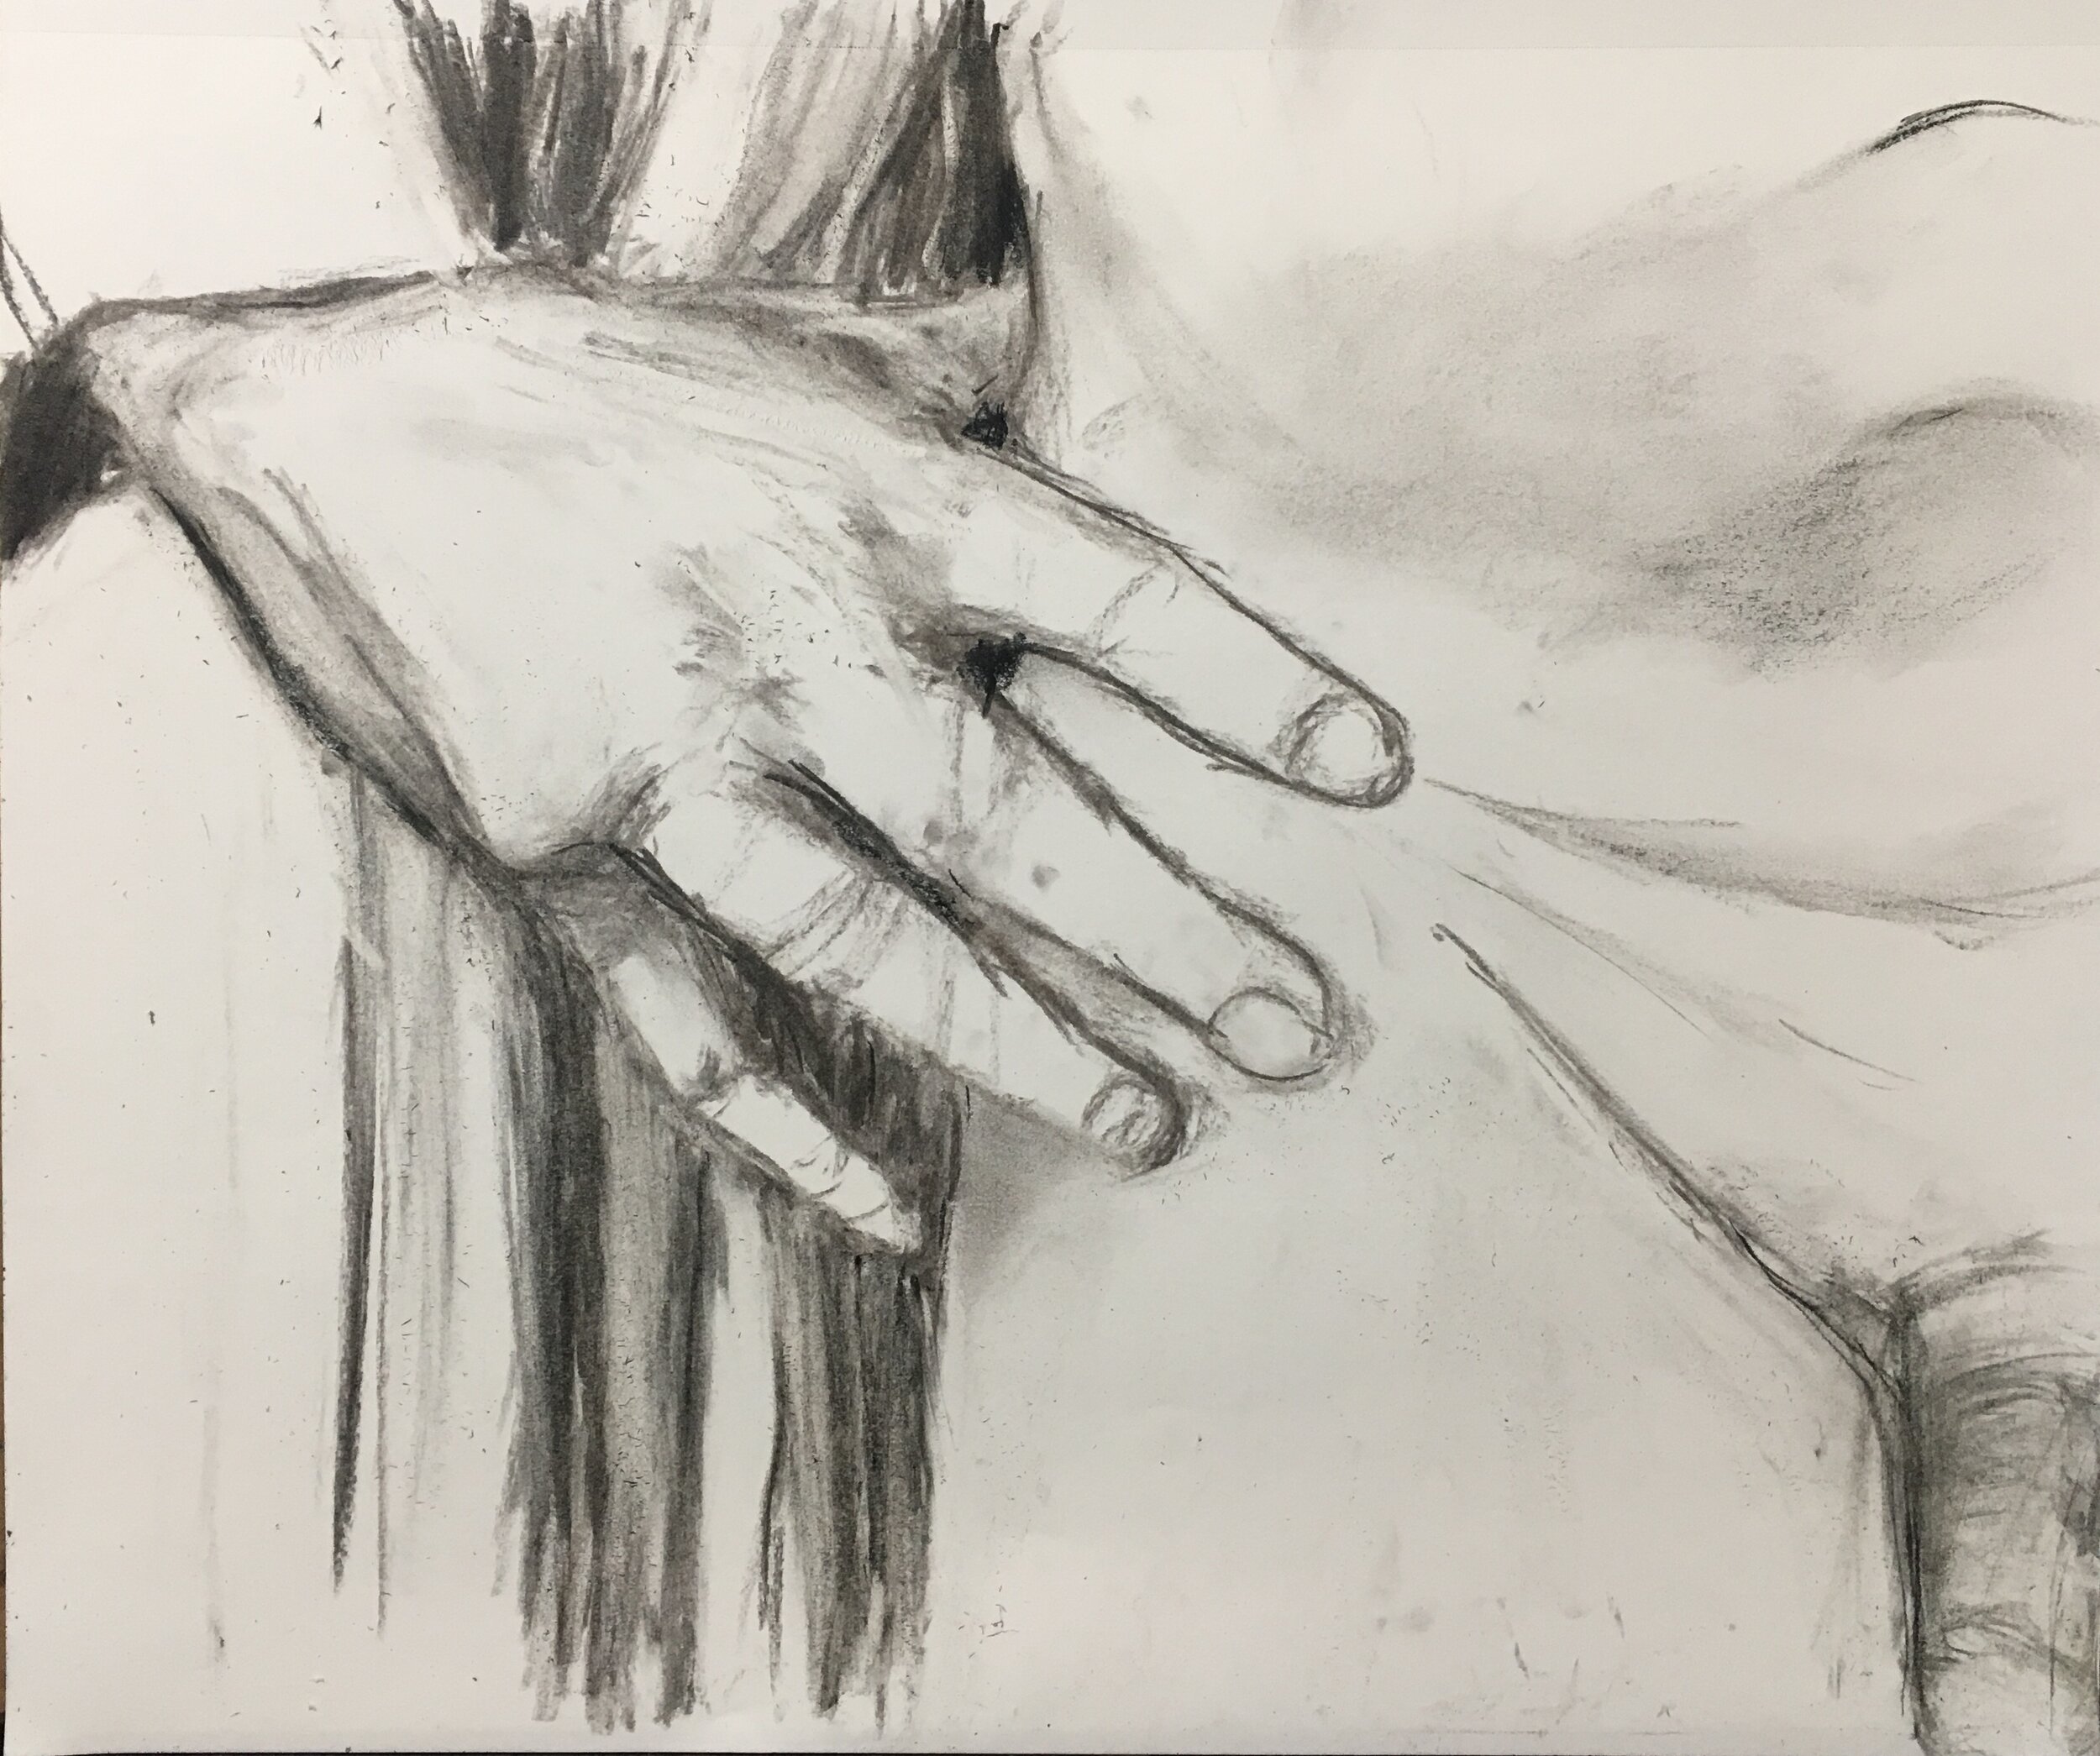 Hand, Fabric, torso (26 April 2020)